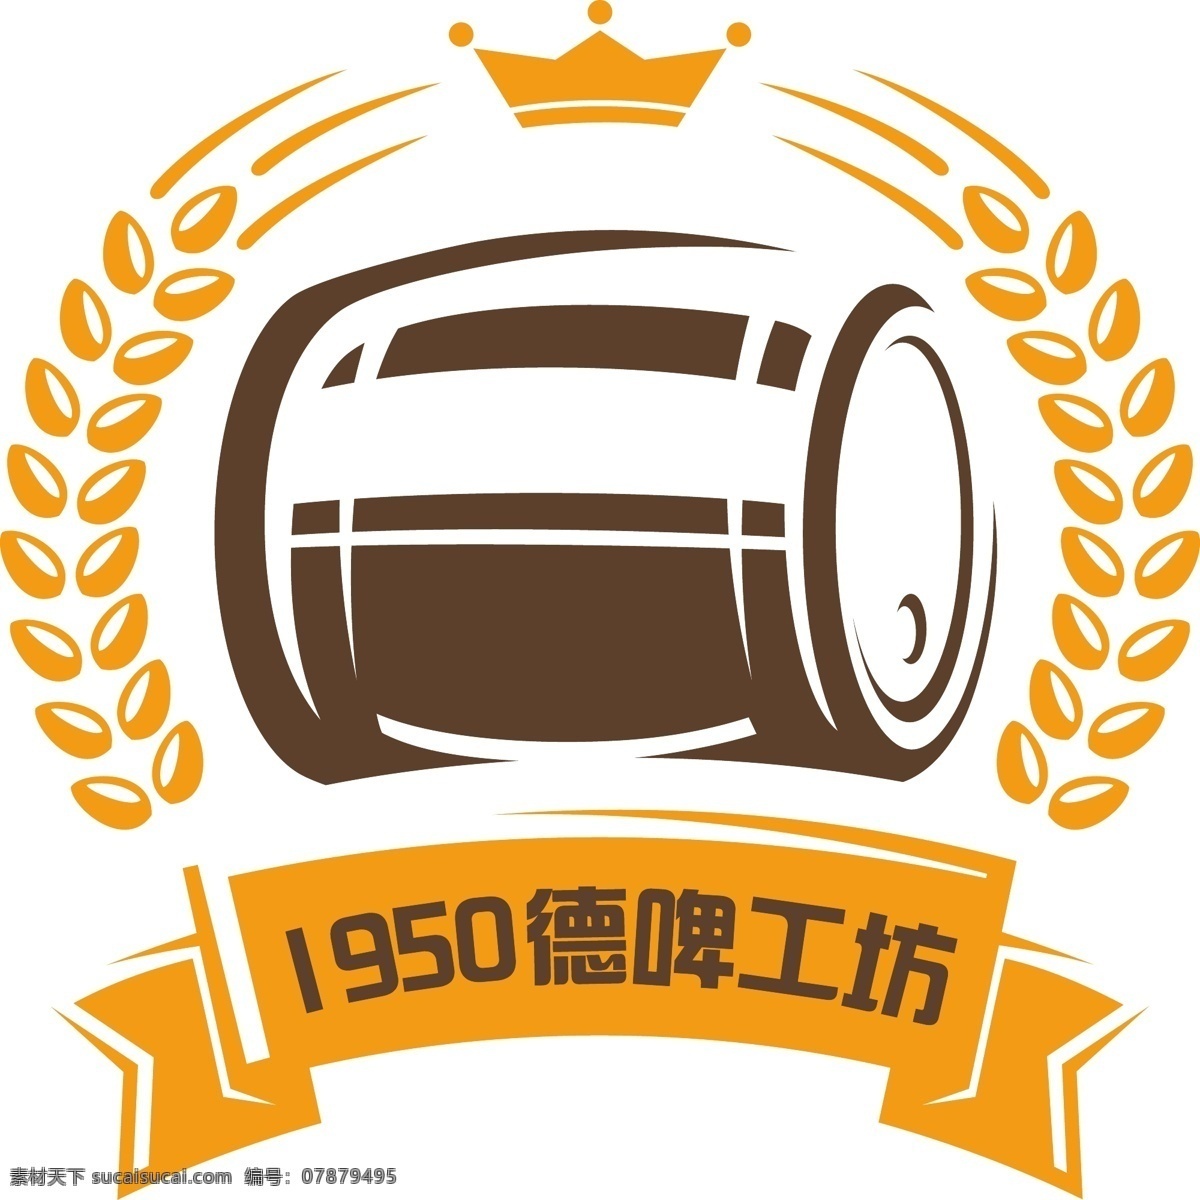 1950 啤酒 工坊 图标 logo 麦穗 logo设计